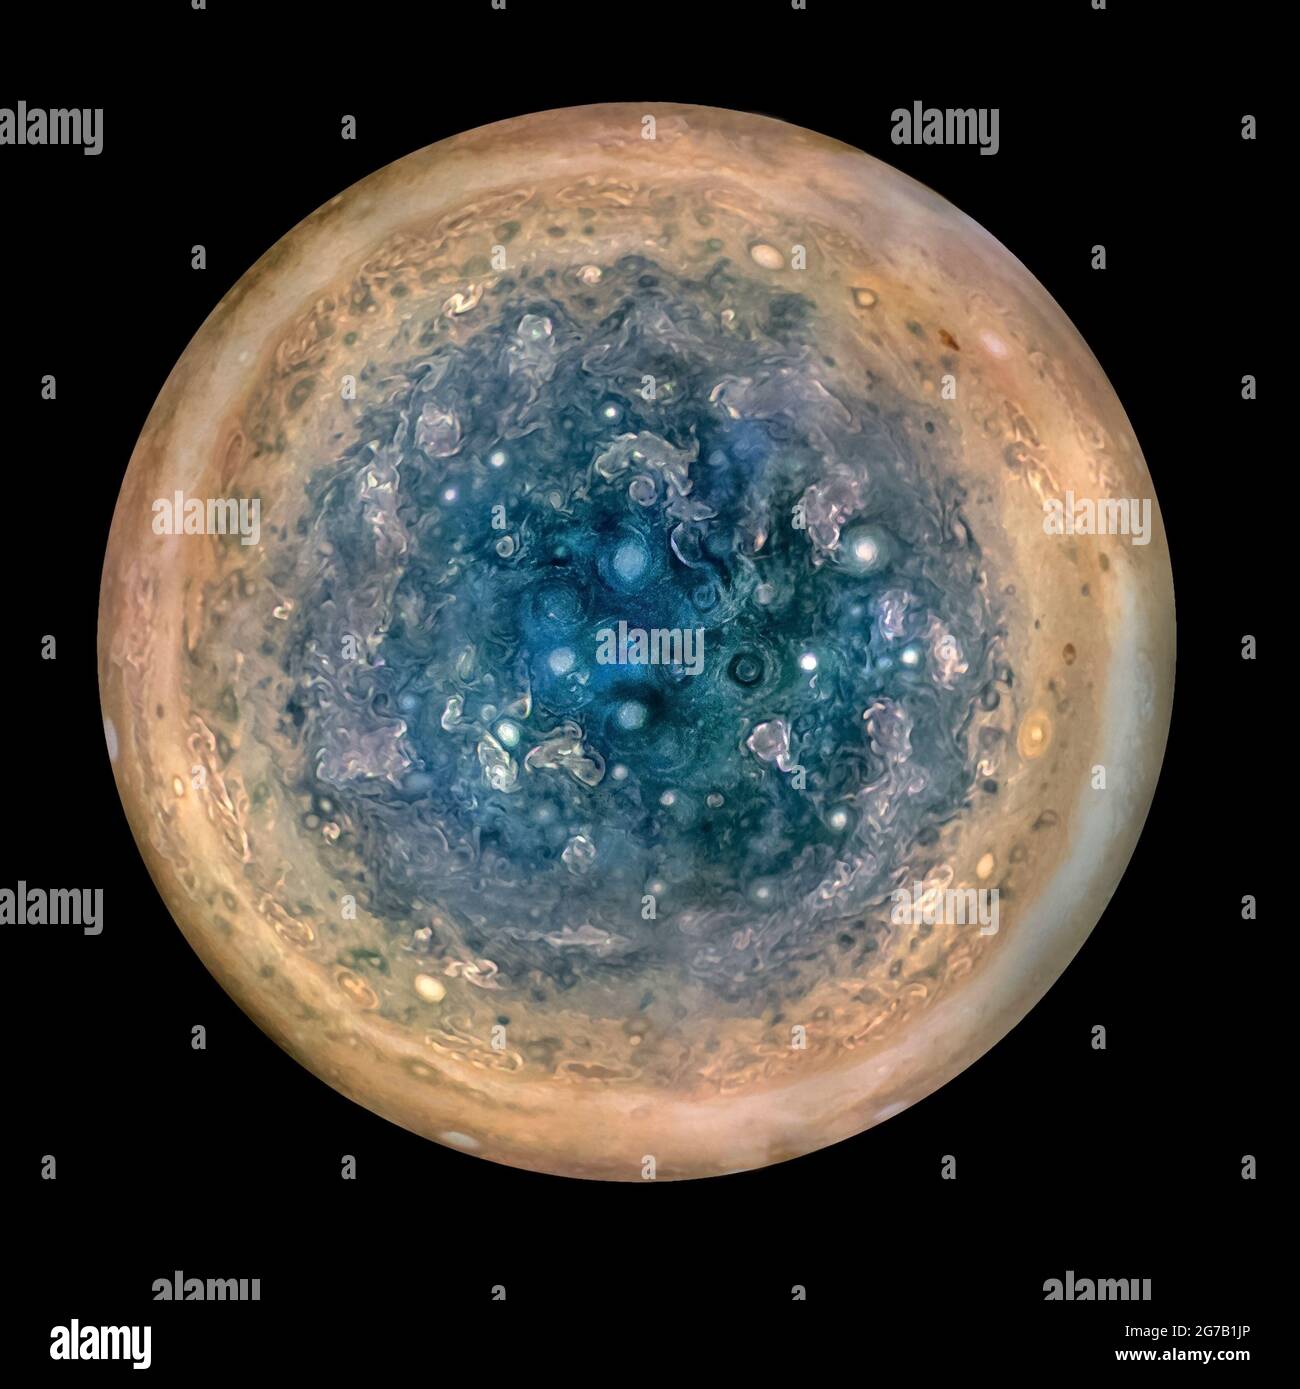 Una visualizzazione del polo sud di Giove, come visto dalla navicella spaziale Juno della NASA. Presa da un'altitudine di 32000 miglia (52000 km). Le caratteristiche ovali sono cicloni, fino a 600 miglia (1000km) di diametro. Le immagini multiple acquisite con lo strumento JunoCam su tre orbite separate sono state combinate per mostrare tutte le aree con luce diurna, colori potenziati e proiezione stereografica. Juno ha lanciato il 5 agosto 2011, entrando nell'orbita di Giove il 4 luglio 2016. ê questa è una versione unica, ottimizzata e migliorata di un'immagine NASA /credit: NASA Foto Stock